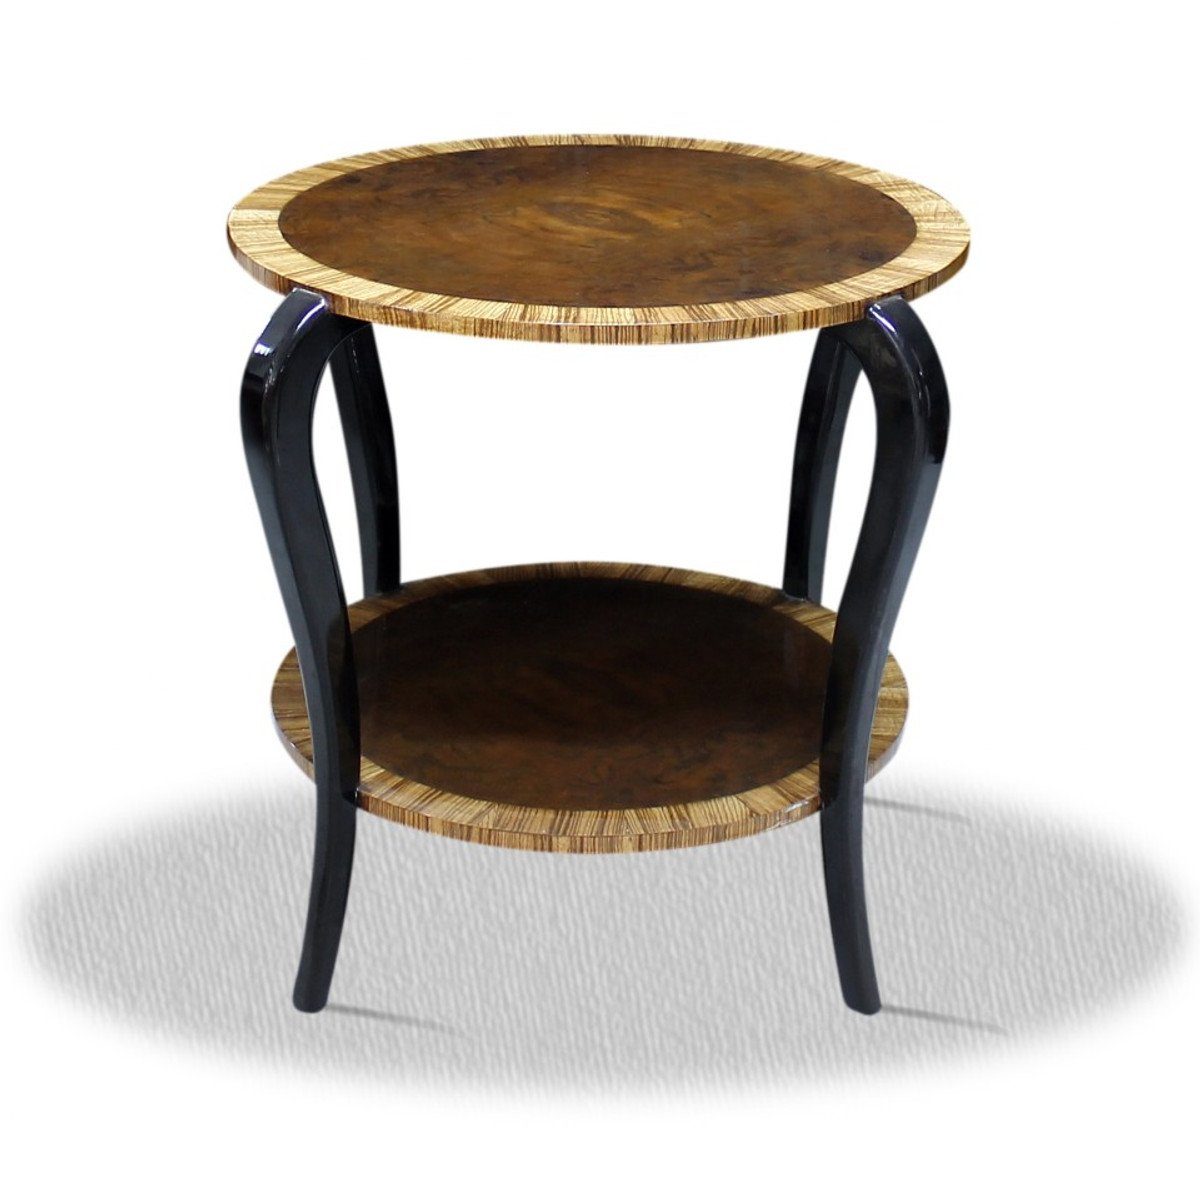 Casa Padrino Beistelltisch Designer Beistelltisch 65 x 65 x H. 75 cm - Antik Stil Tisch Möbel